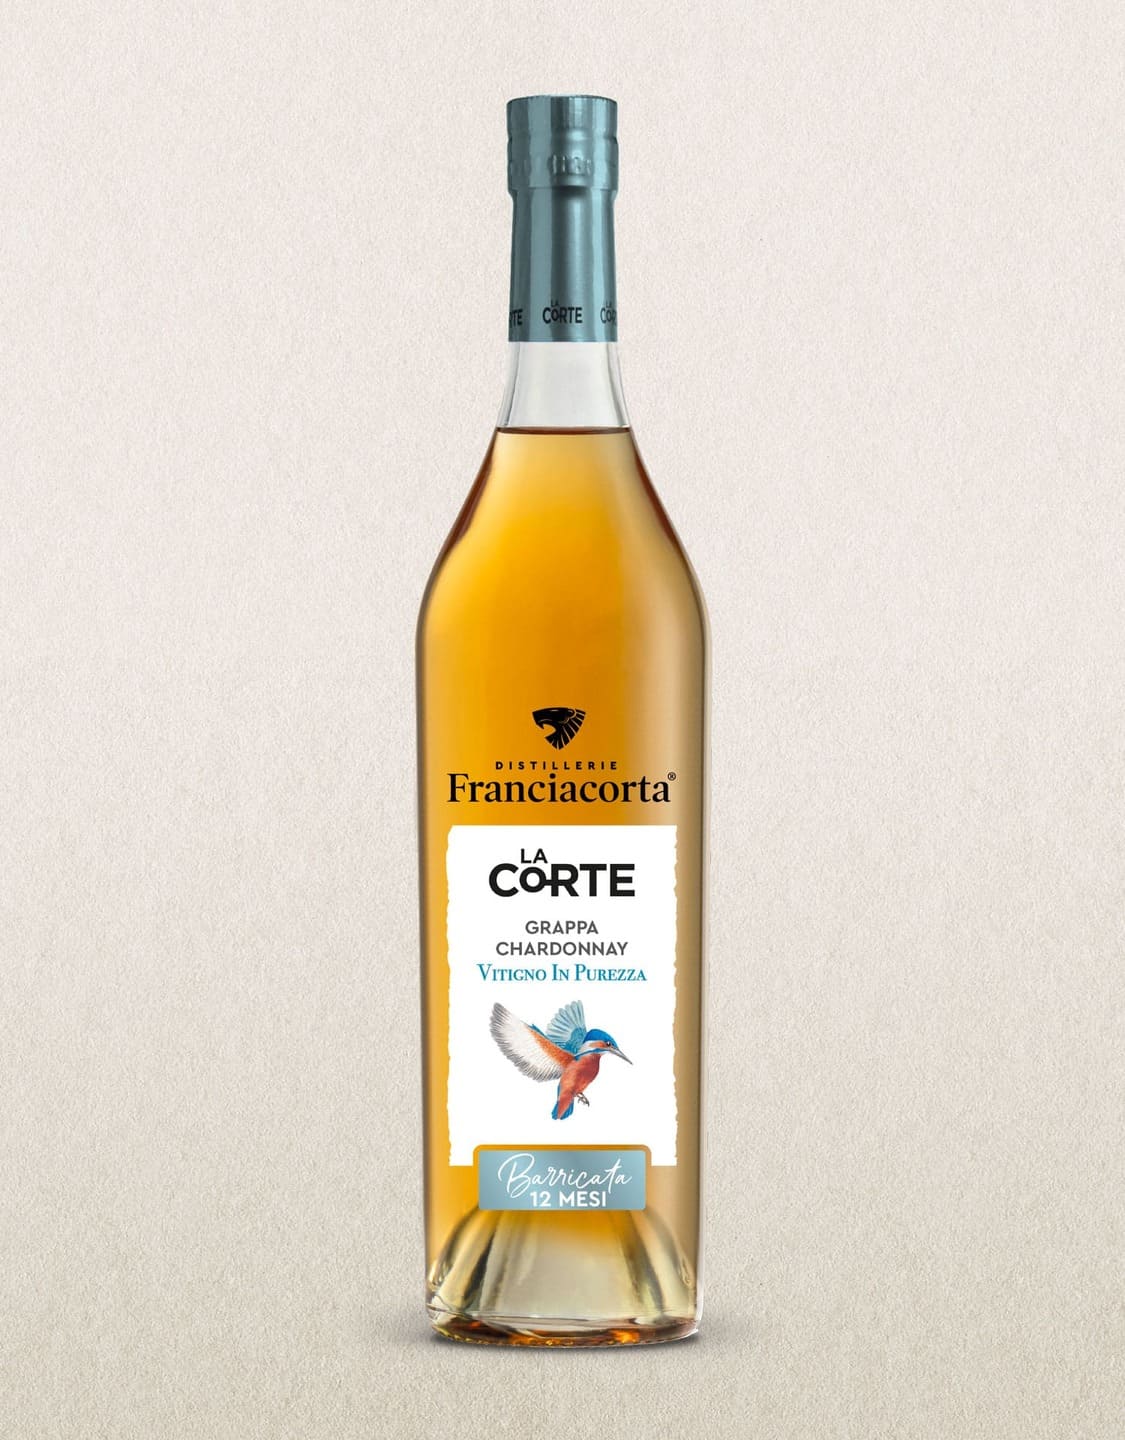 LaCorte-Chardonnay-Barrique-70ml